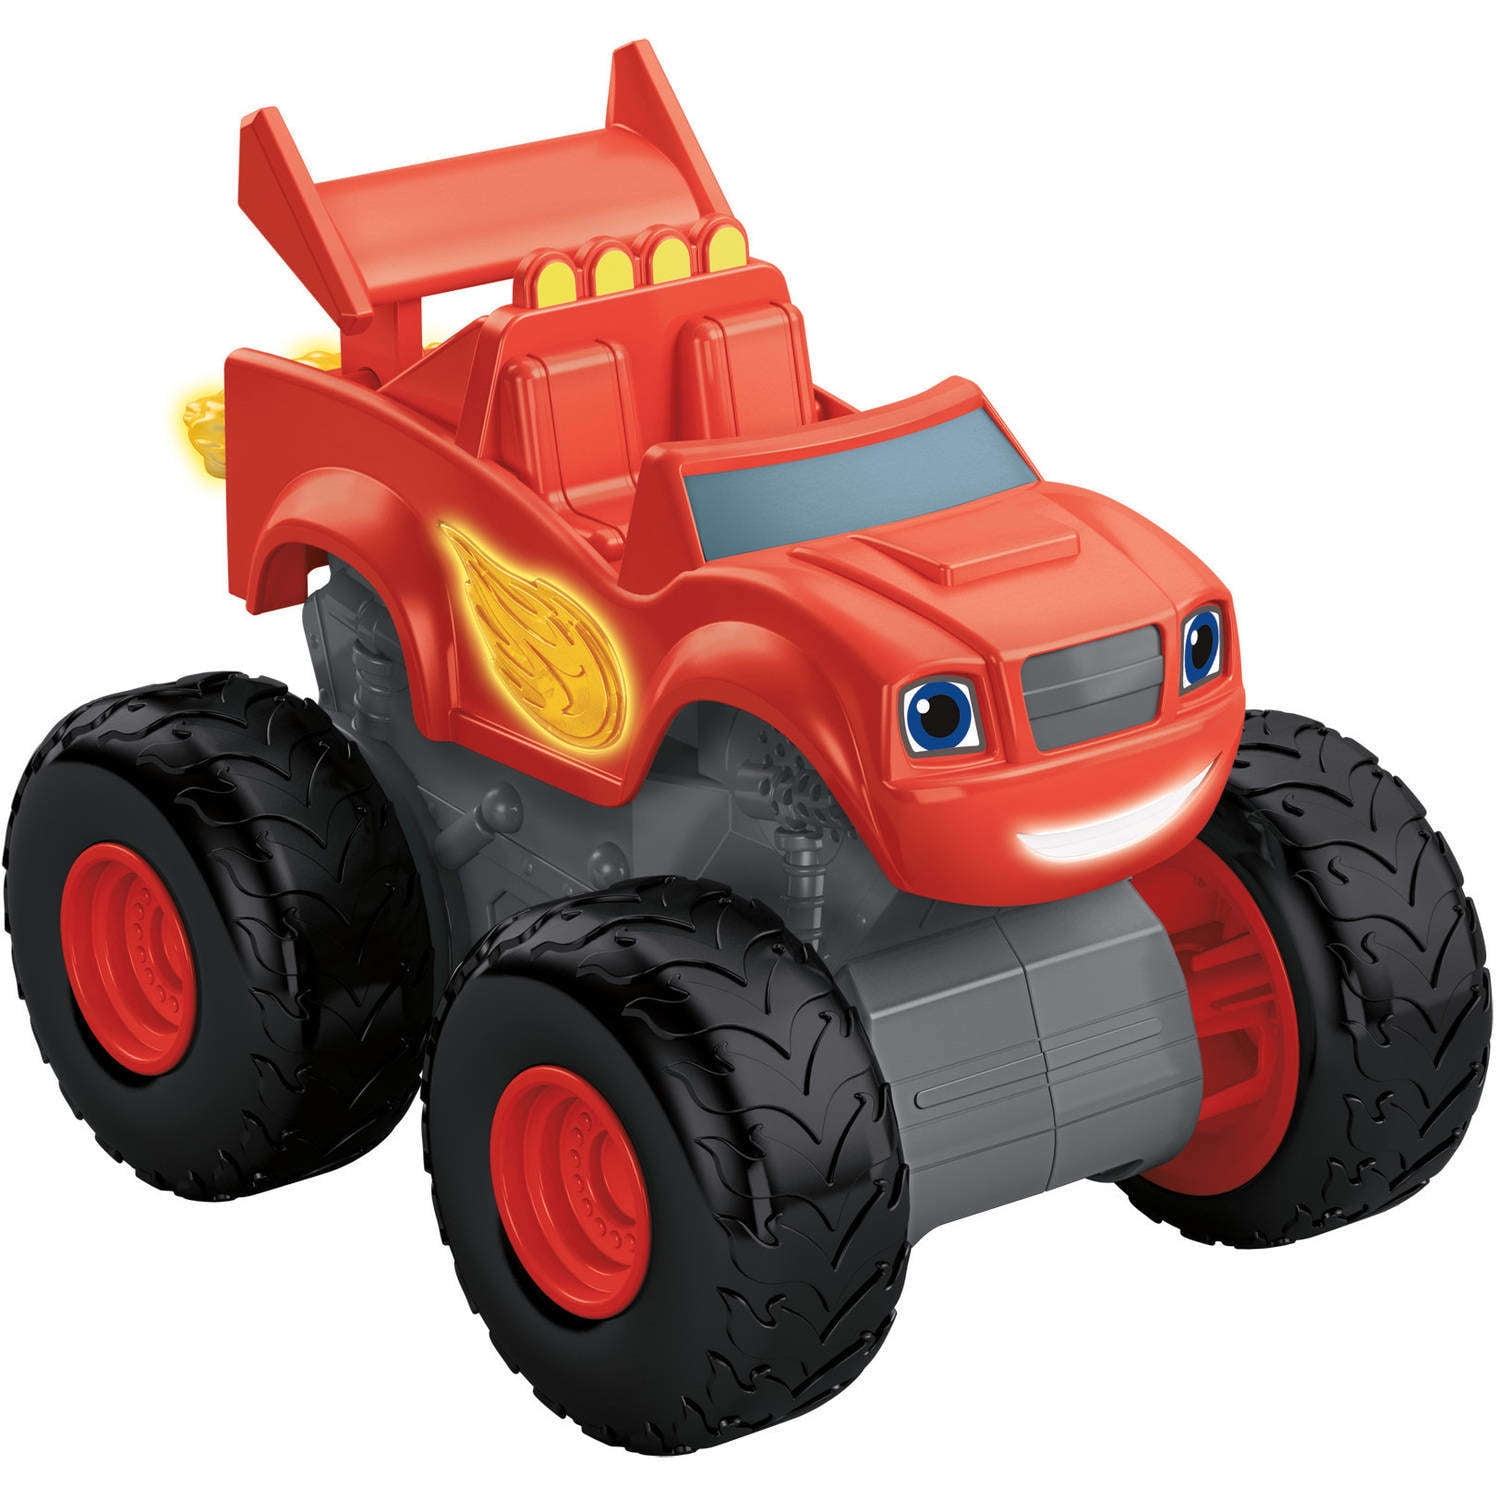 Blaze and the Monster Machines Monster Truck Red Plastic 2014 Mattel Viacom